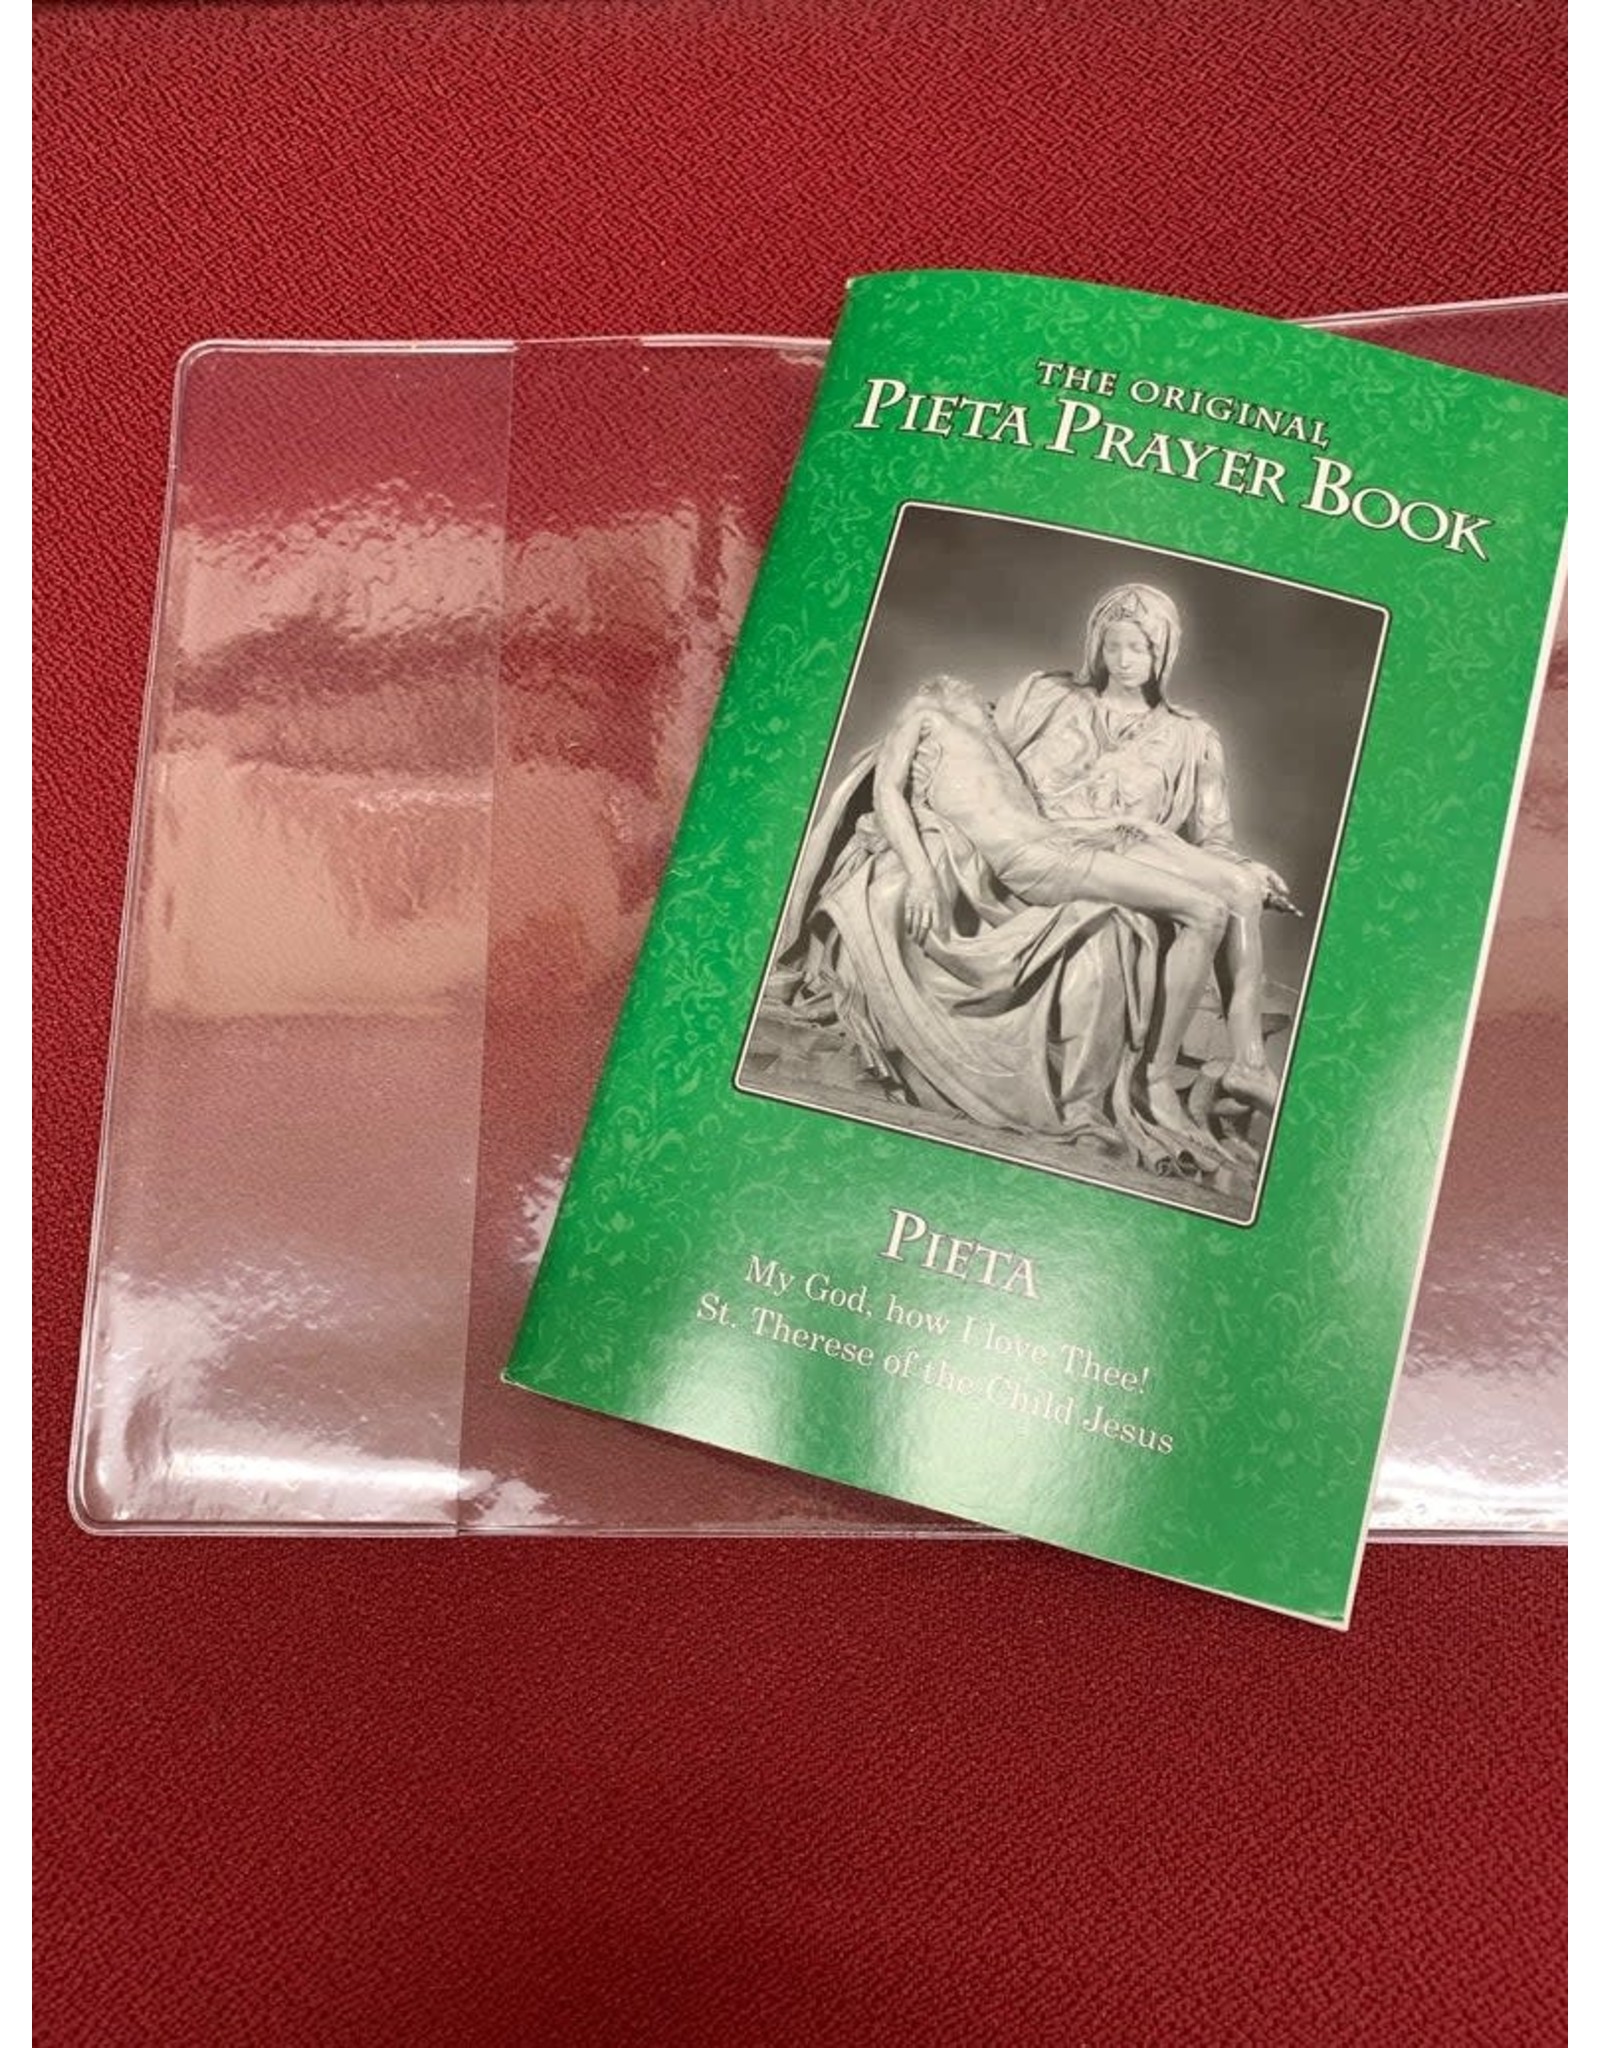 MLOR Cover for Pieta